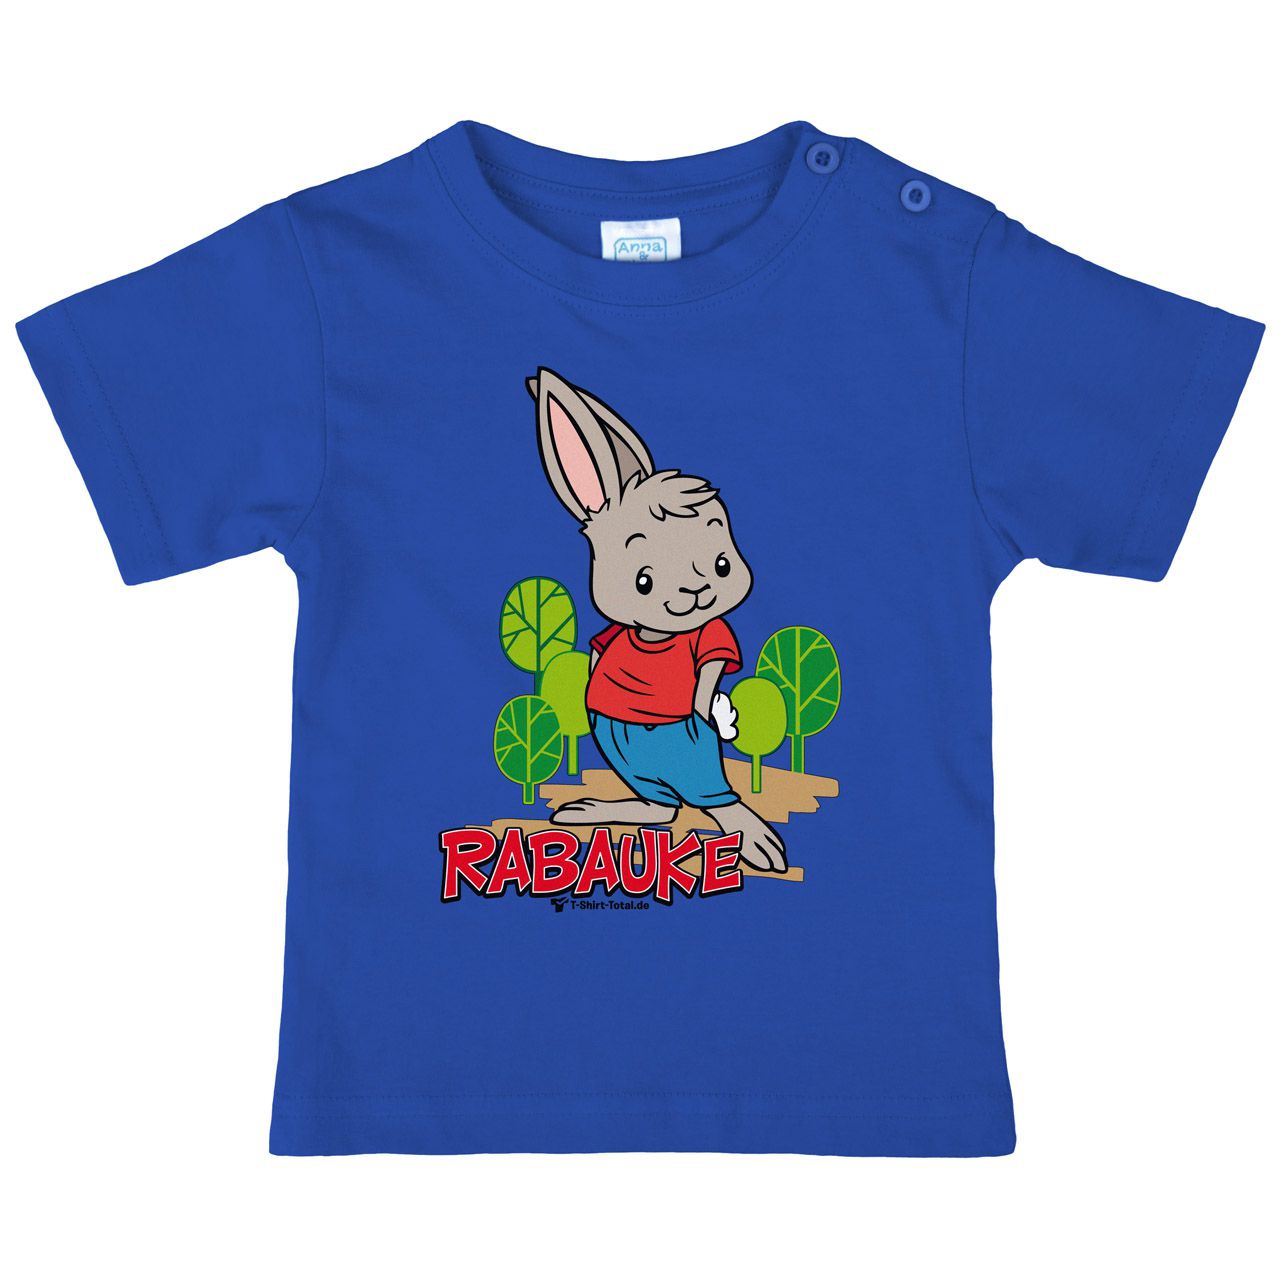 Rabauke Kinder T-Shirt royal 110 / 116